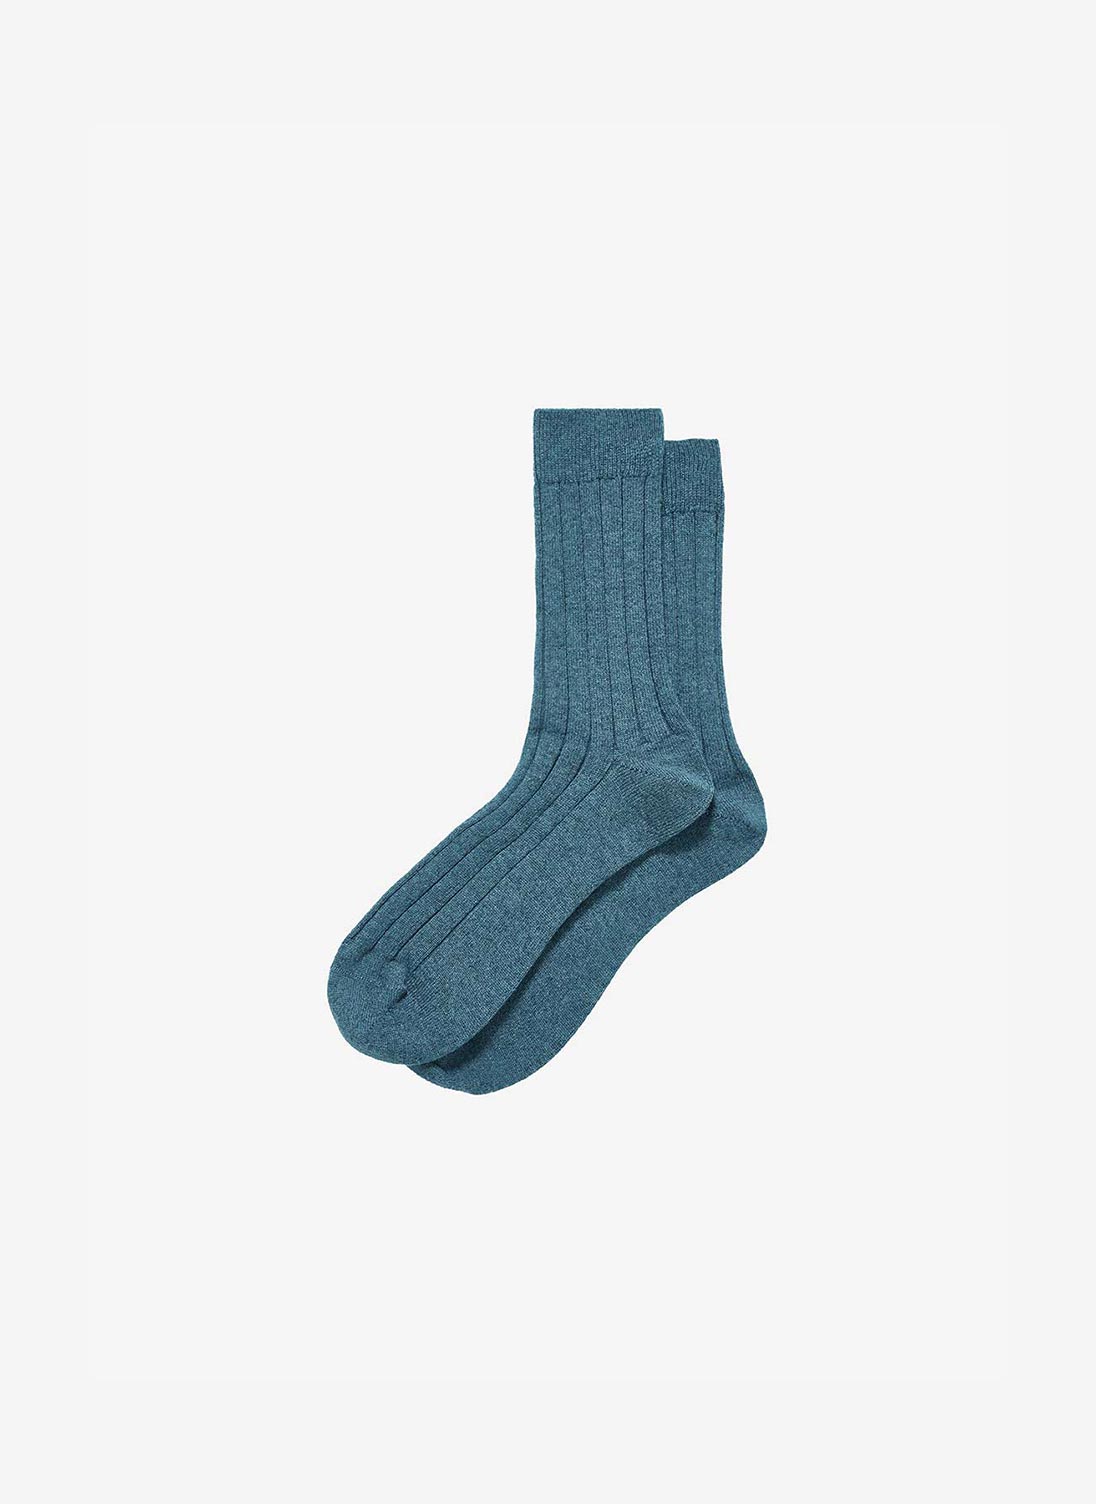 Men's Cashmere Socks Ocean